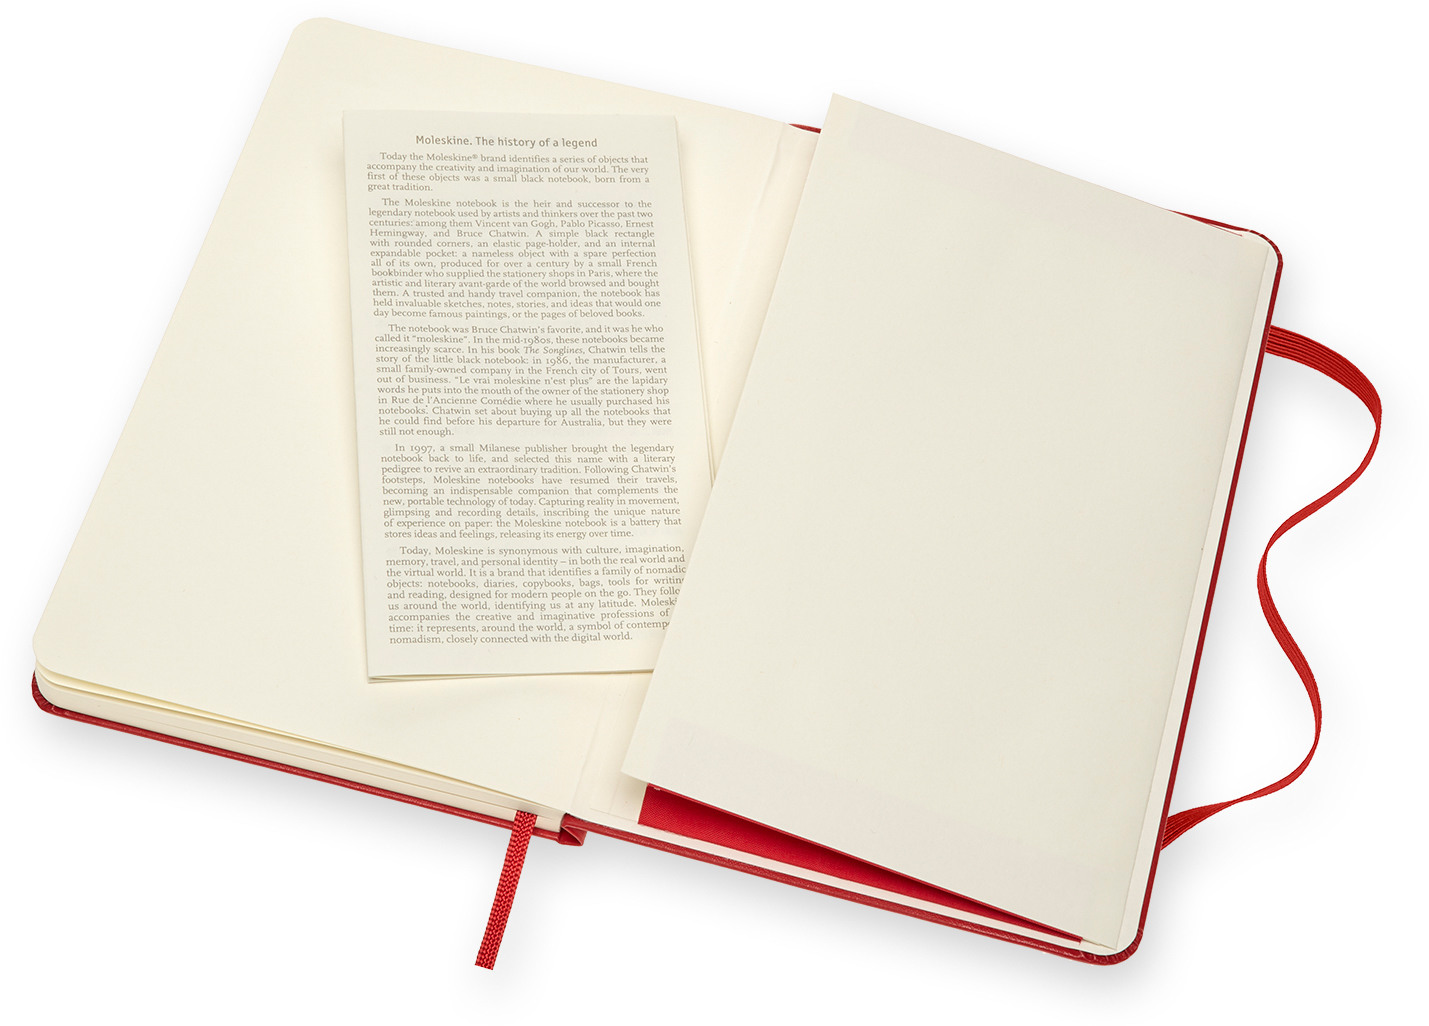 MOLESKINE Livre d'ésquisse 18.2x11.8cm 603111 Medium, scarlet, 88 pages